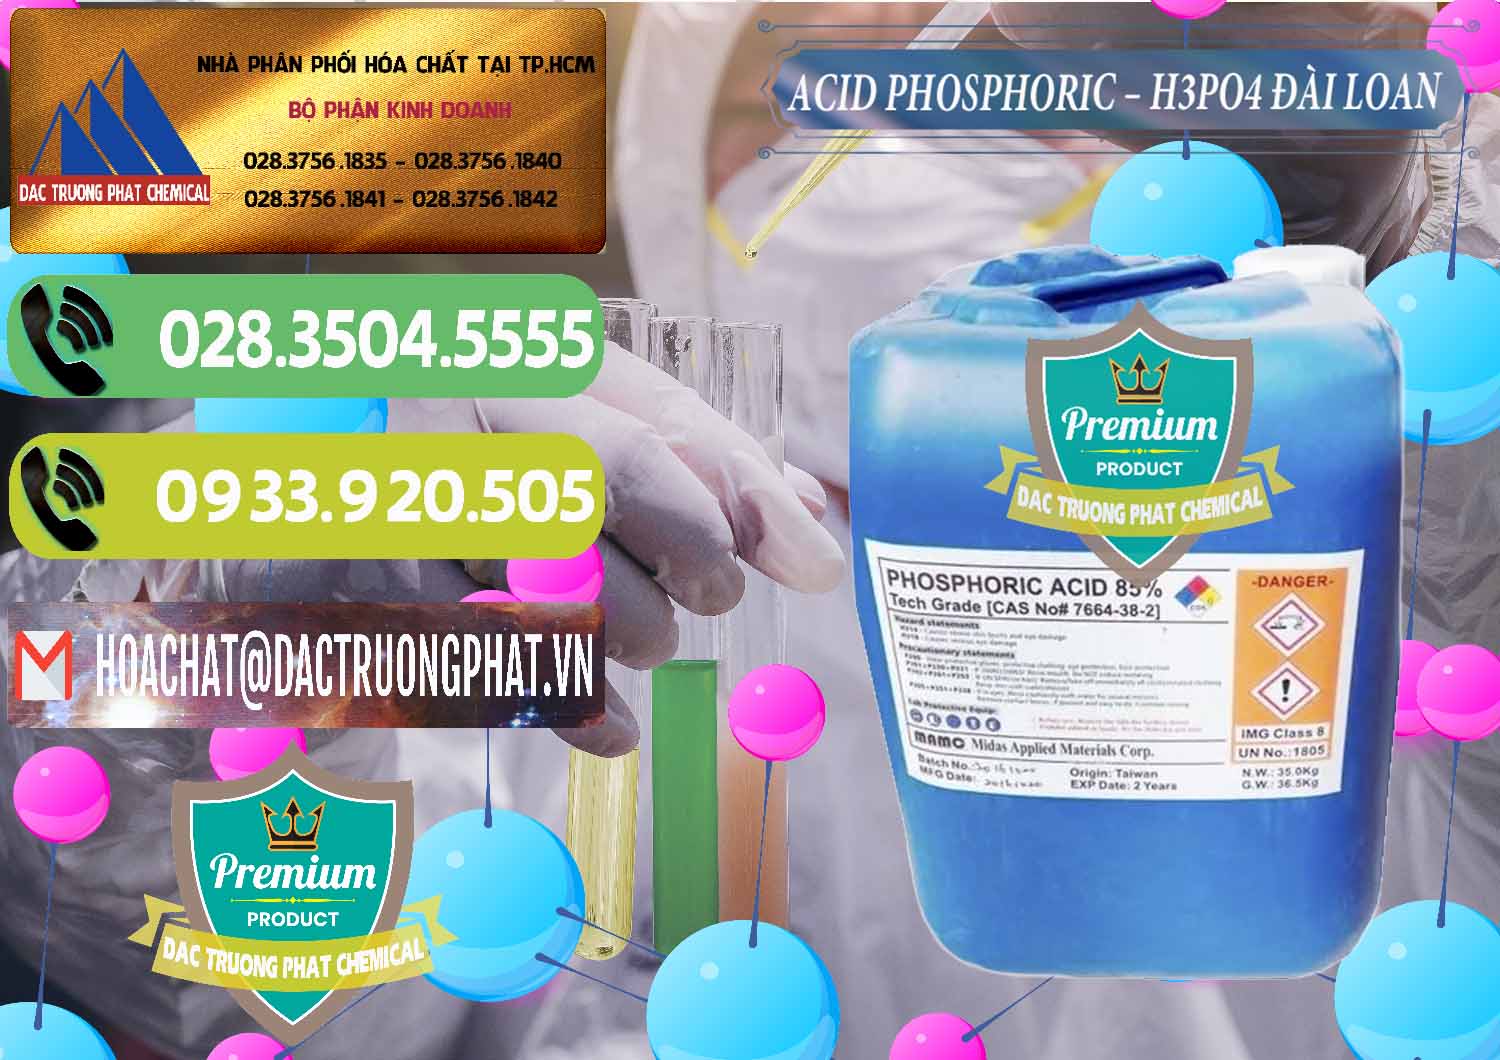 Cty chuyên bán _ phân phối Axit Phosphoric - Acid Phosphoric H3PO4 85% Đài Loan Taiwan - 0351 - Cty chuyên bán ( cung cấp ) hóa chất tại TP.HCM - hoachatmientay.vn